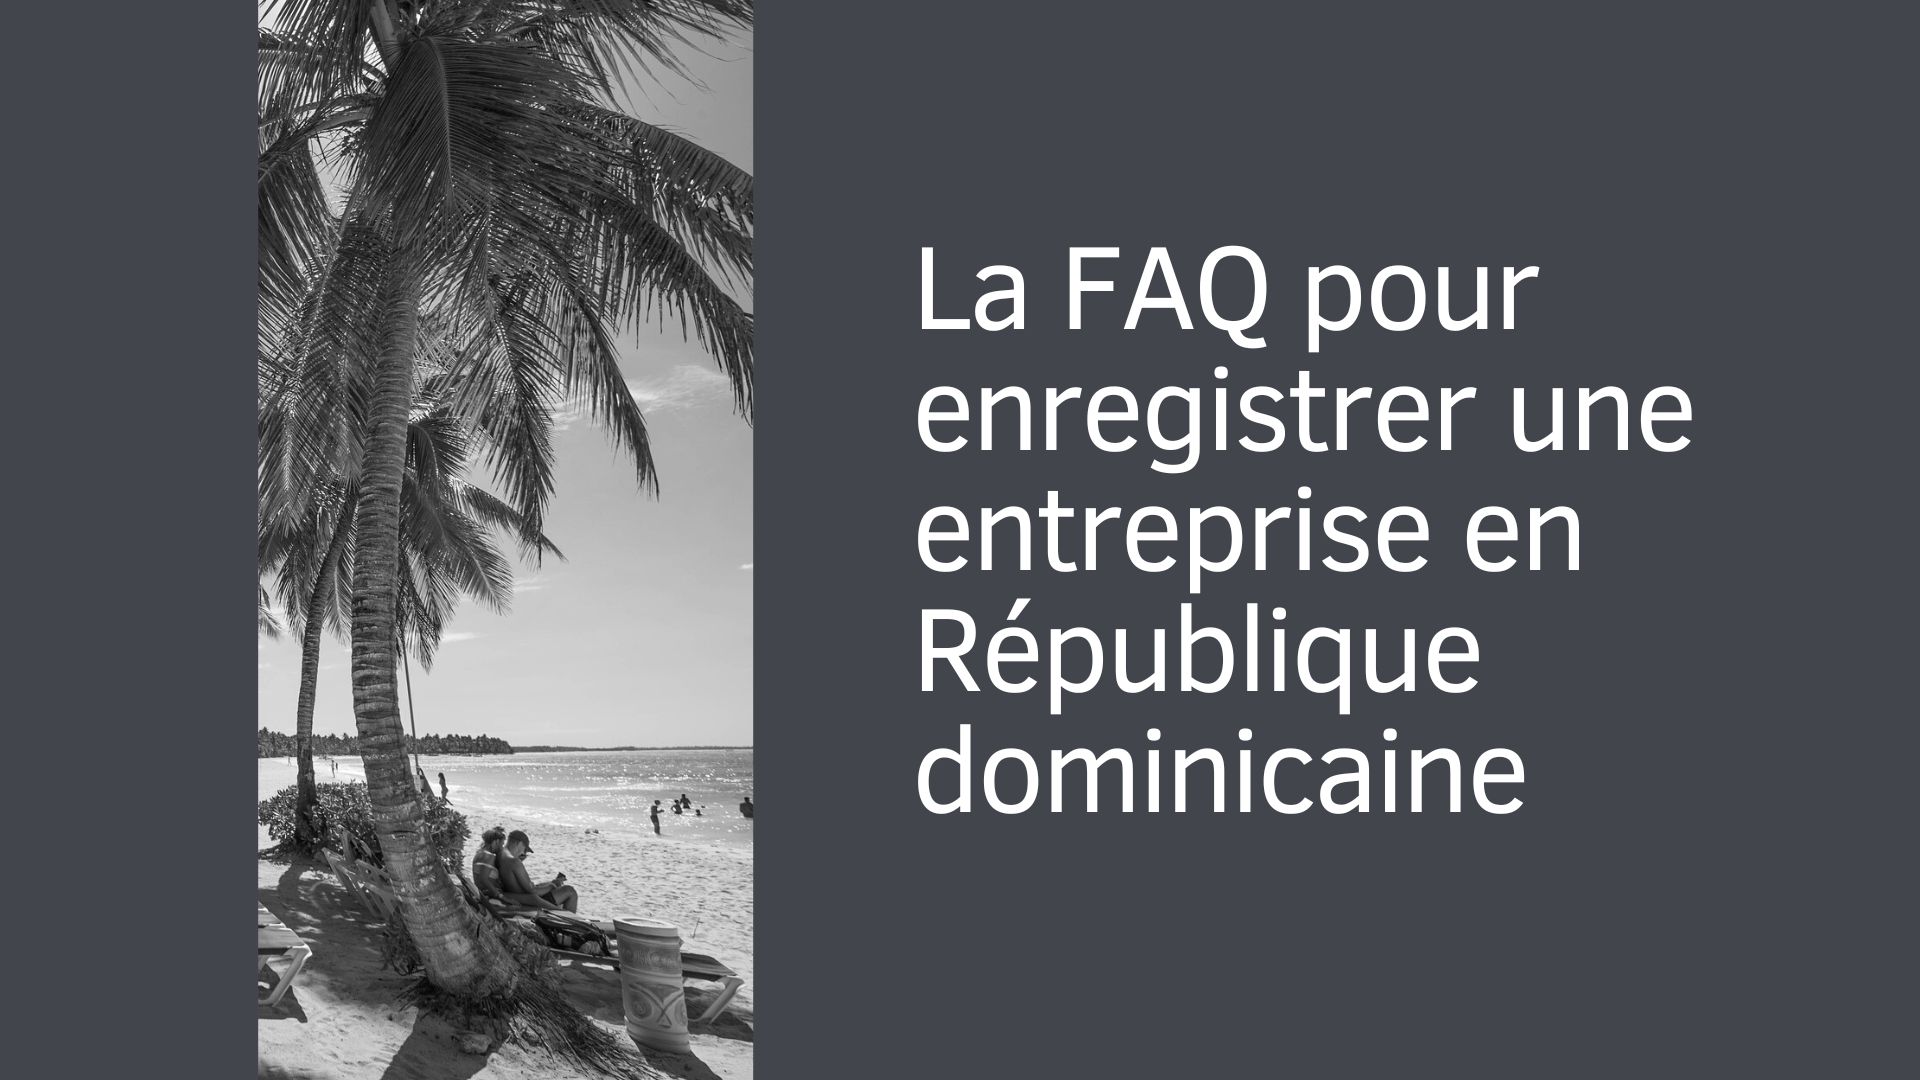 La FAQ pour enregistrer une entreprise en République dominicaine